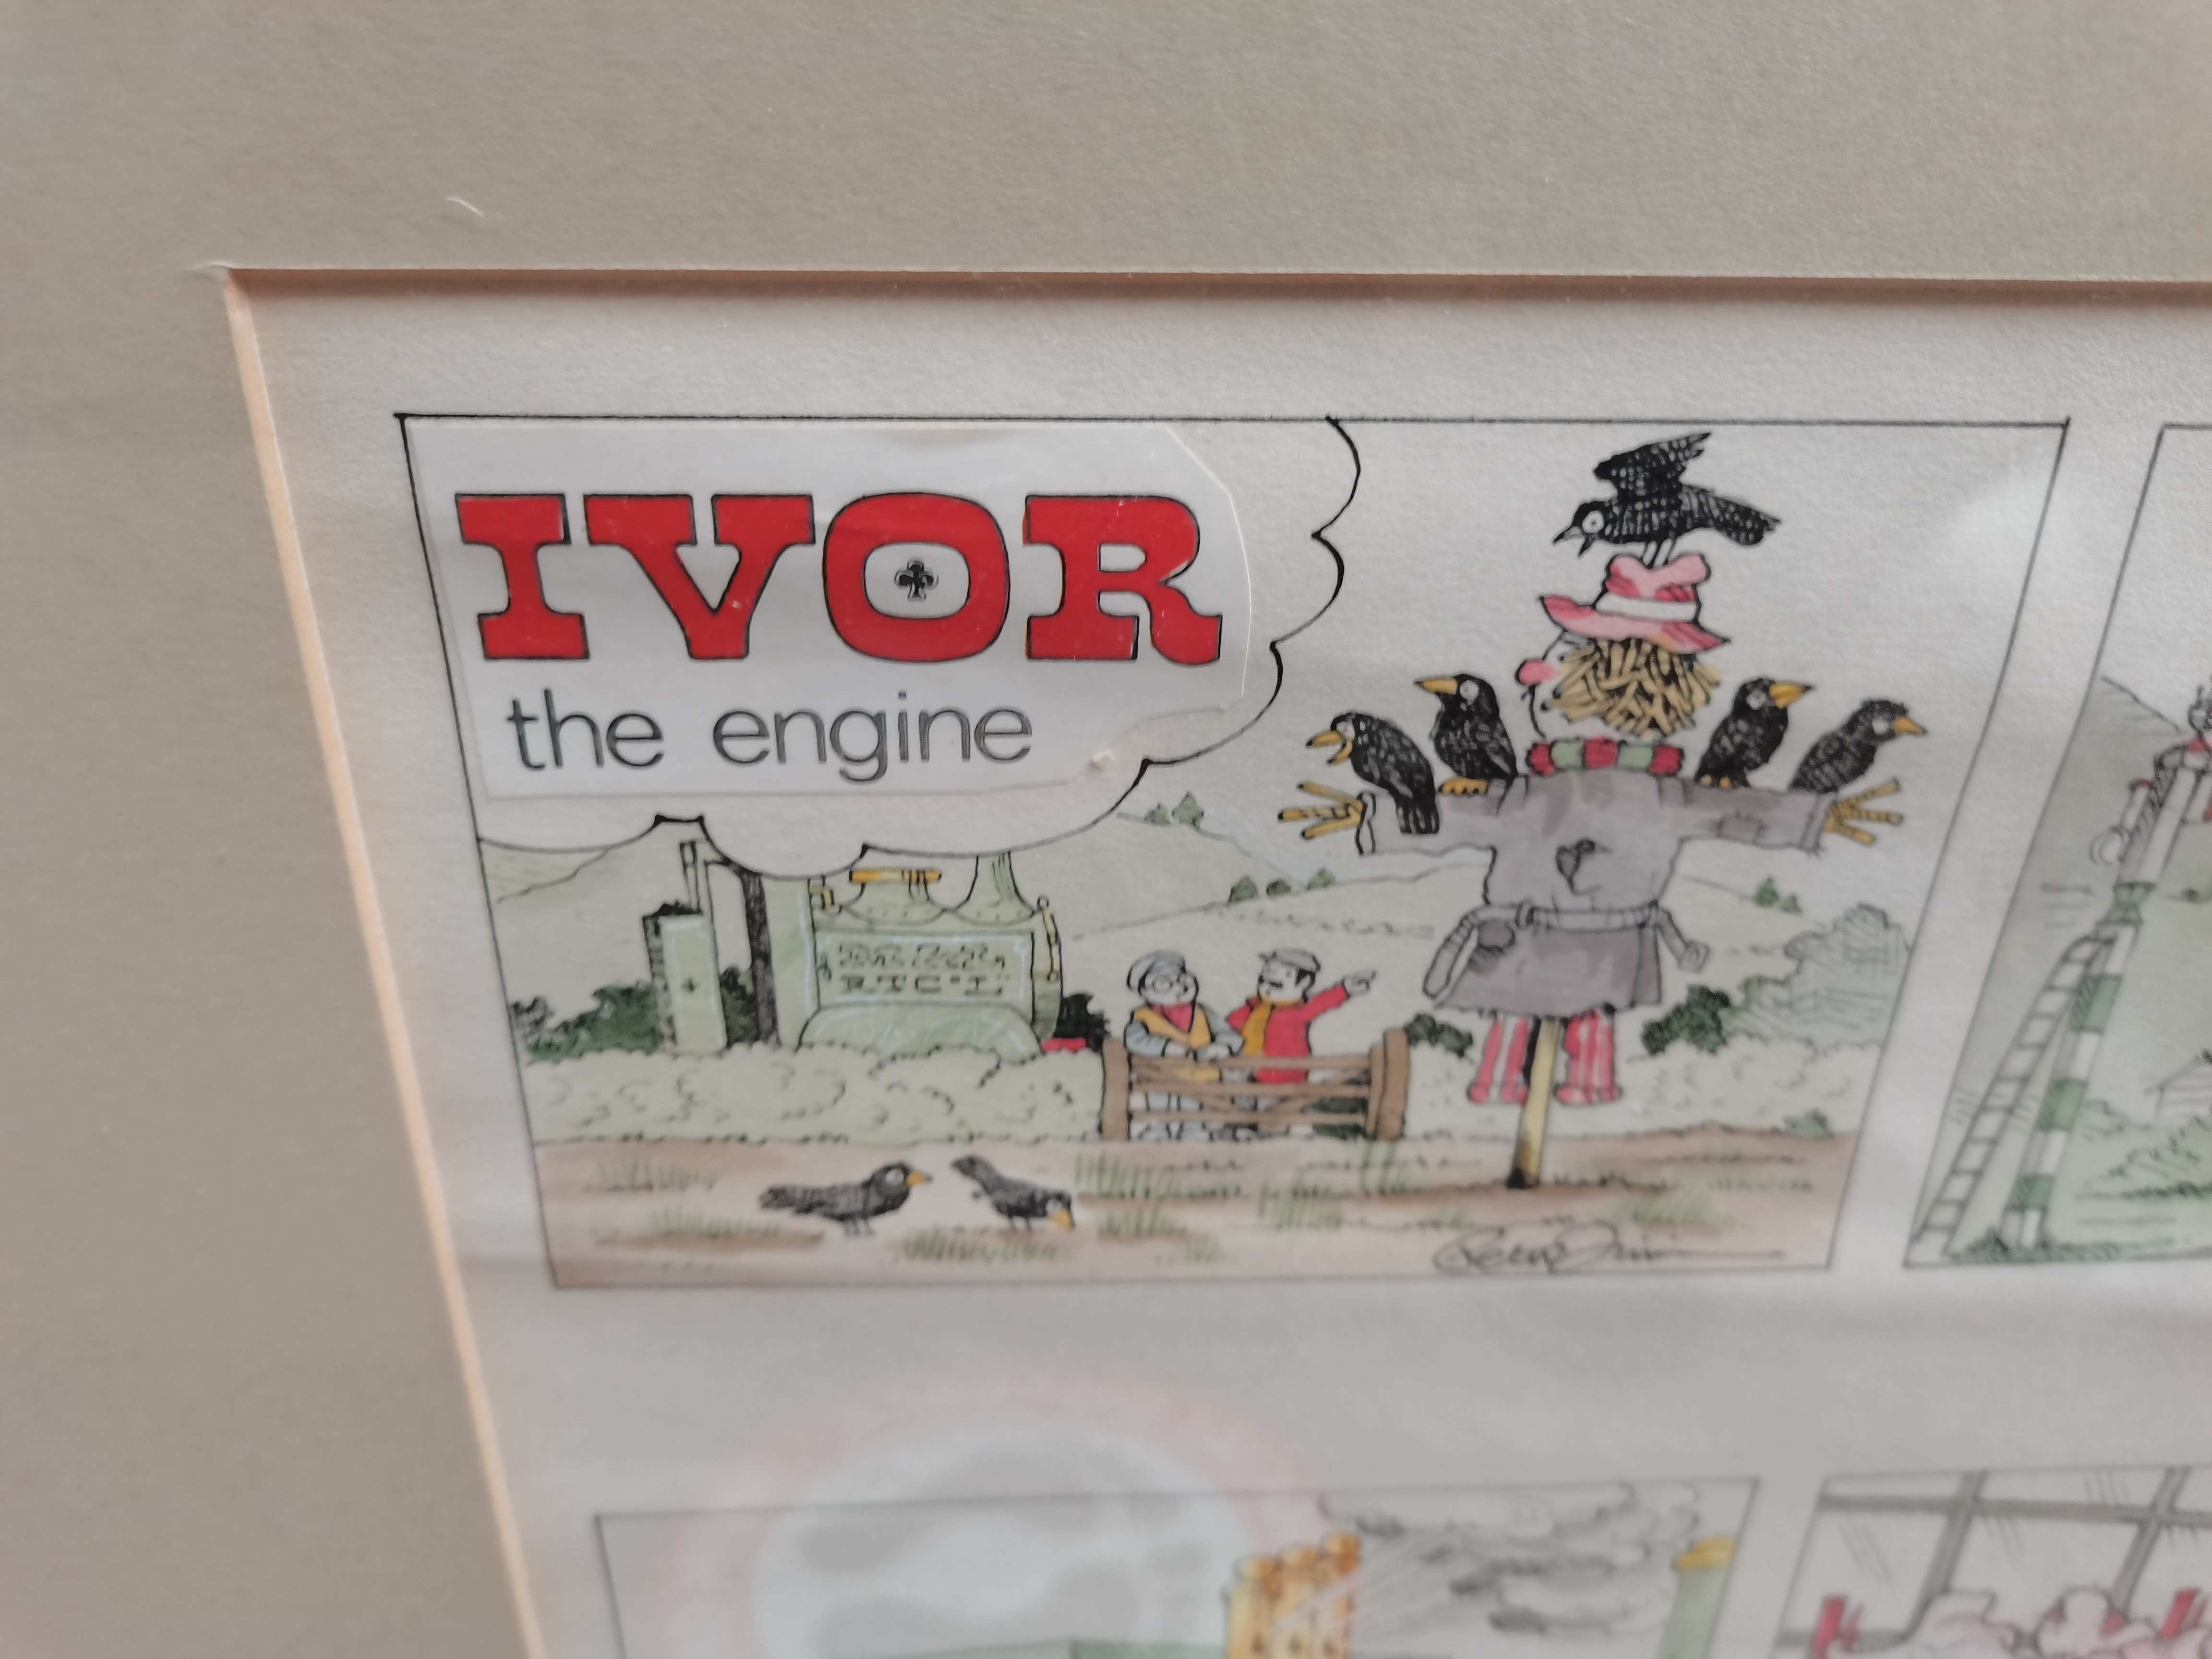 Framed Artists original artwork for "Ivor the Engine" by Peter Firmin (born 1928) British - Image 3 of 3